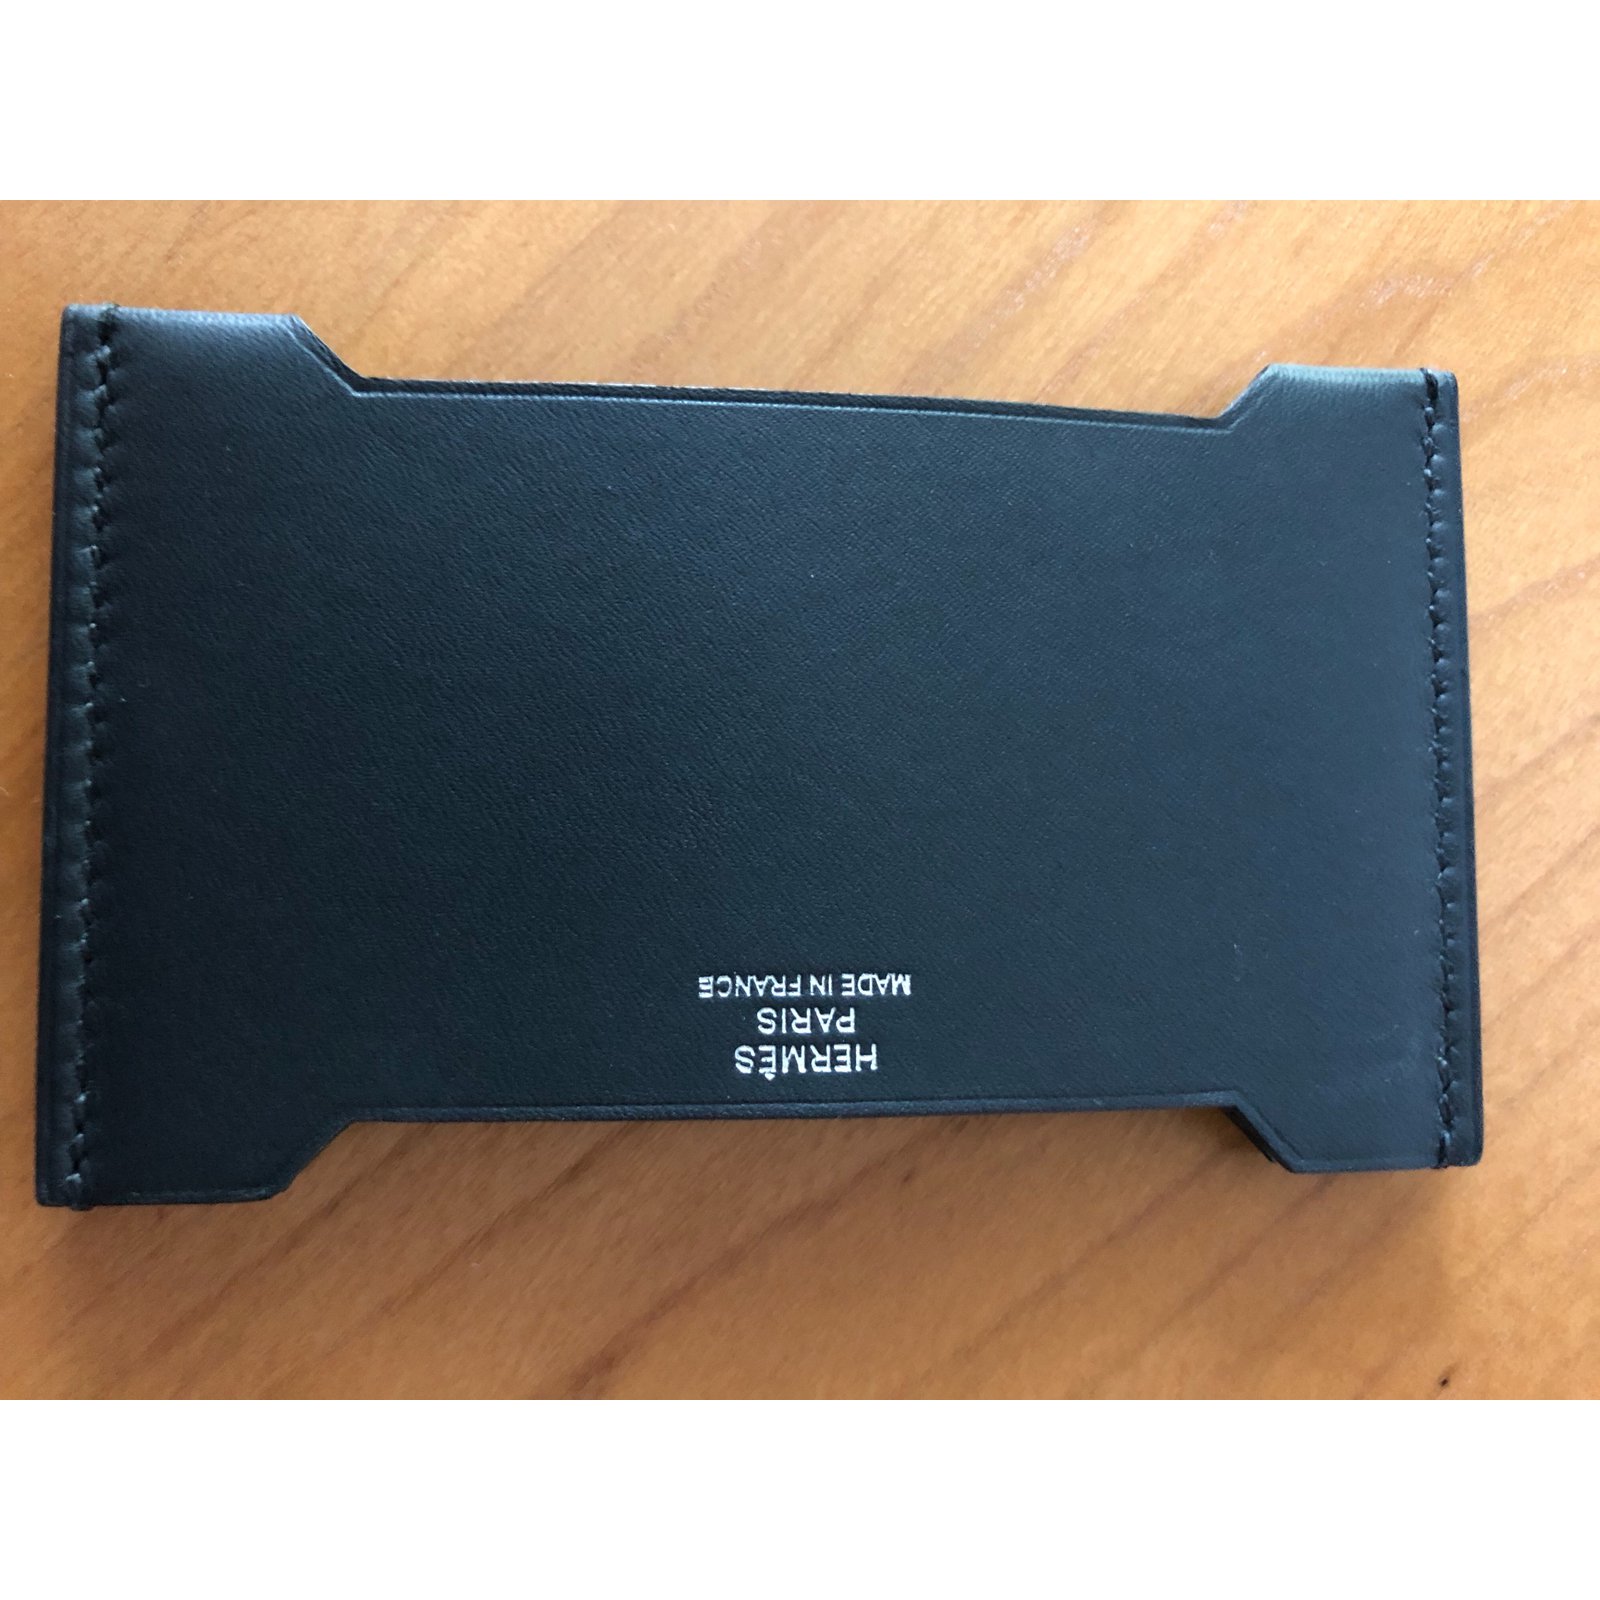 hermes manhattan compact wallet